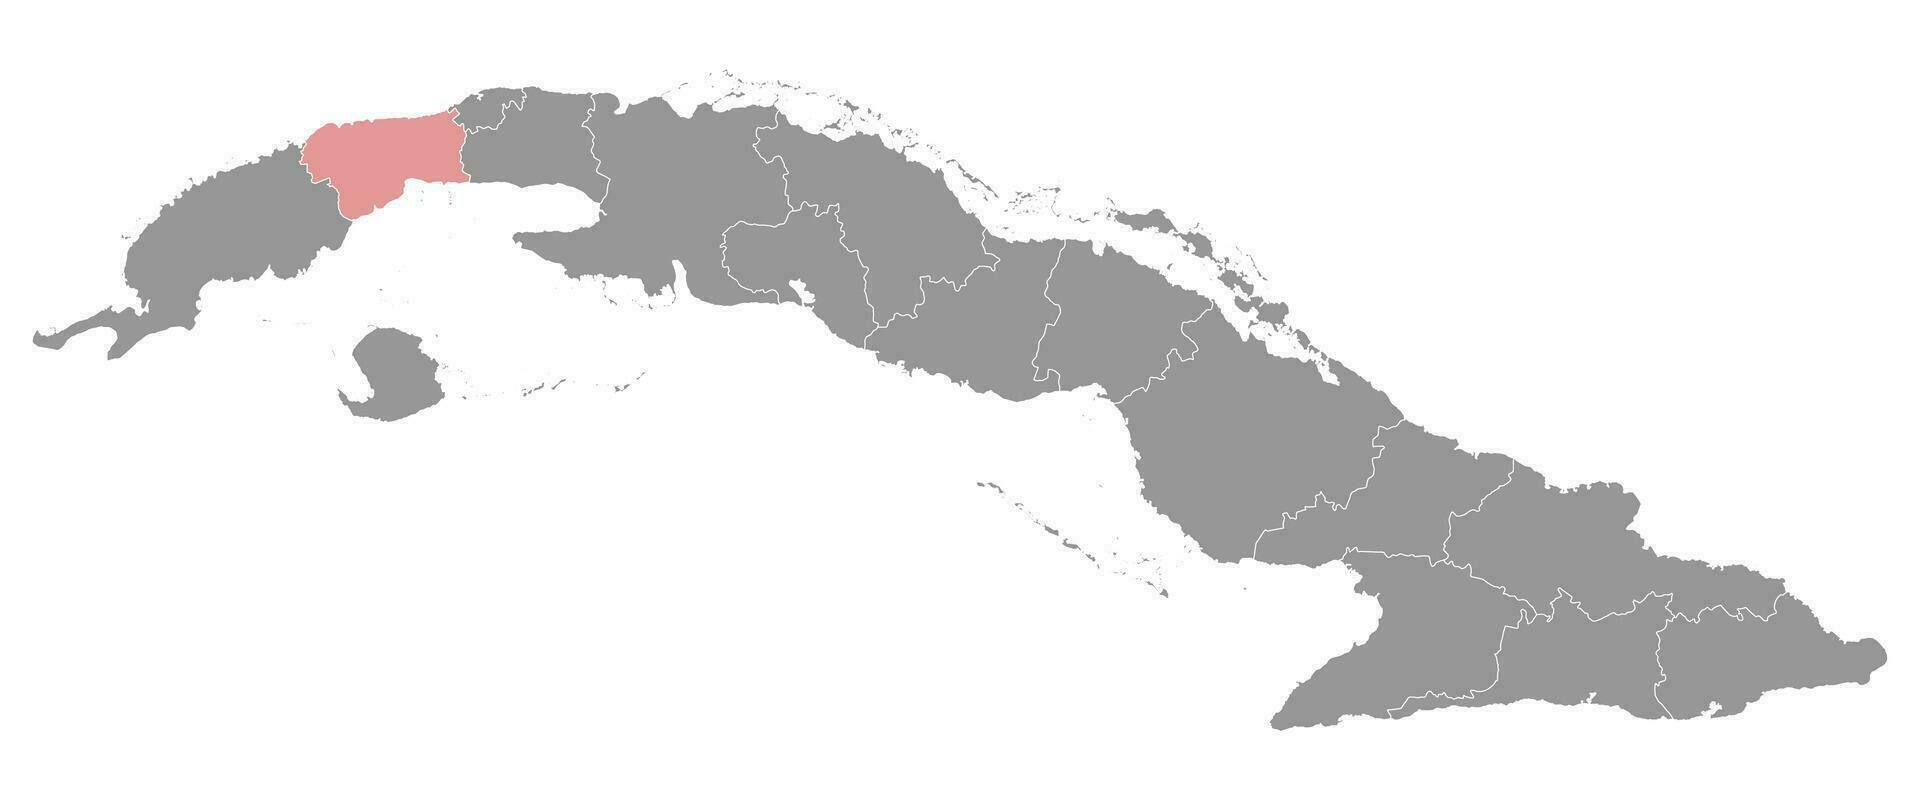 Artemisa Provinz Karte, administrative Aufteilung von Kuba. Vektor Illustration.